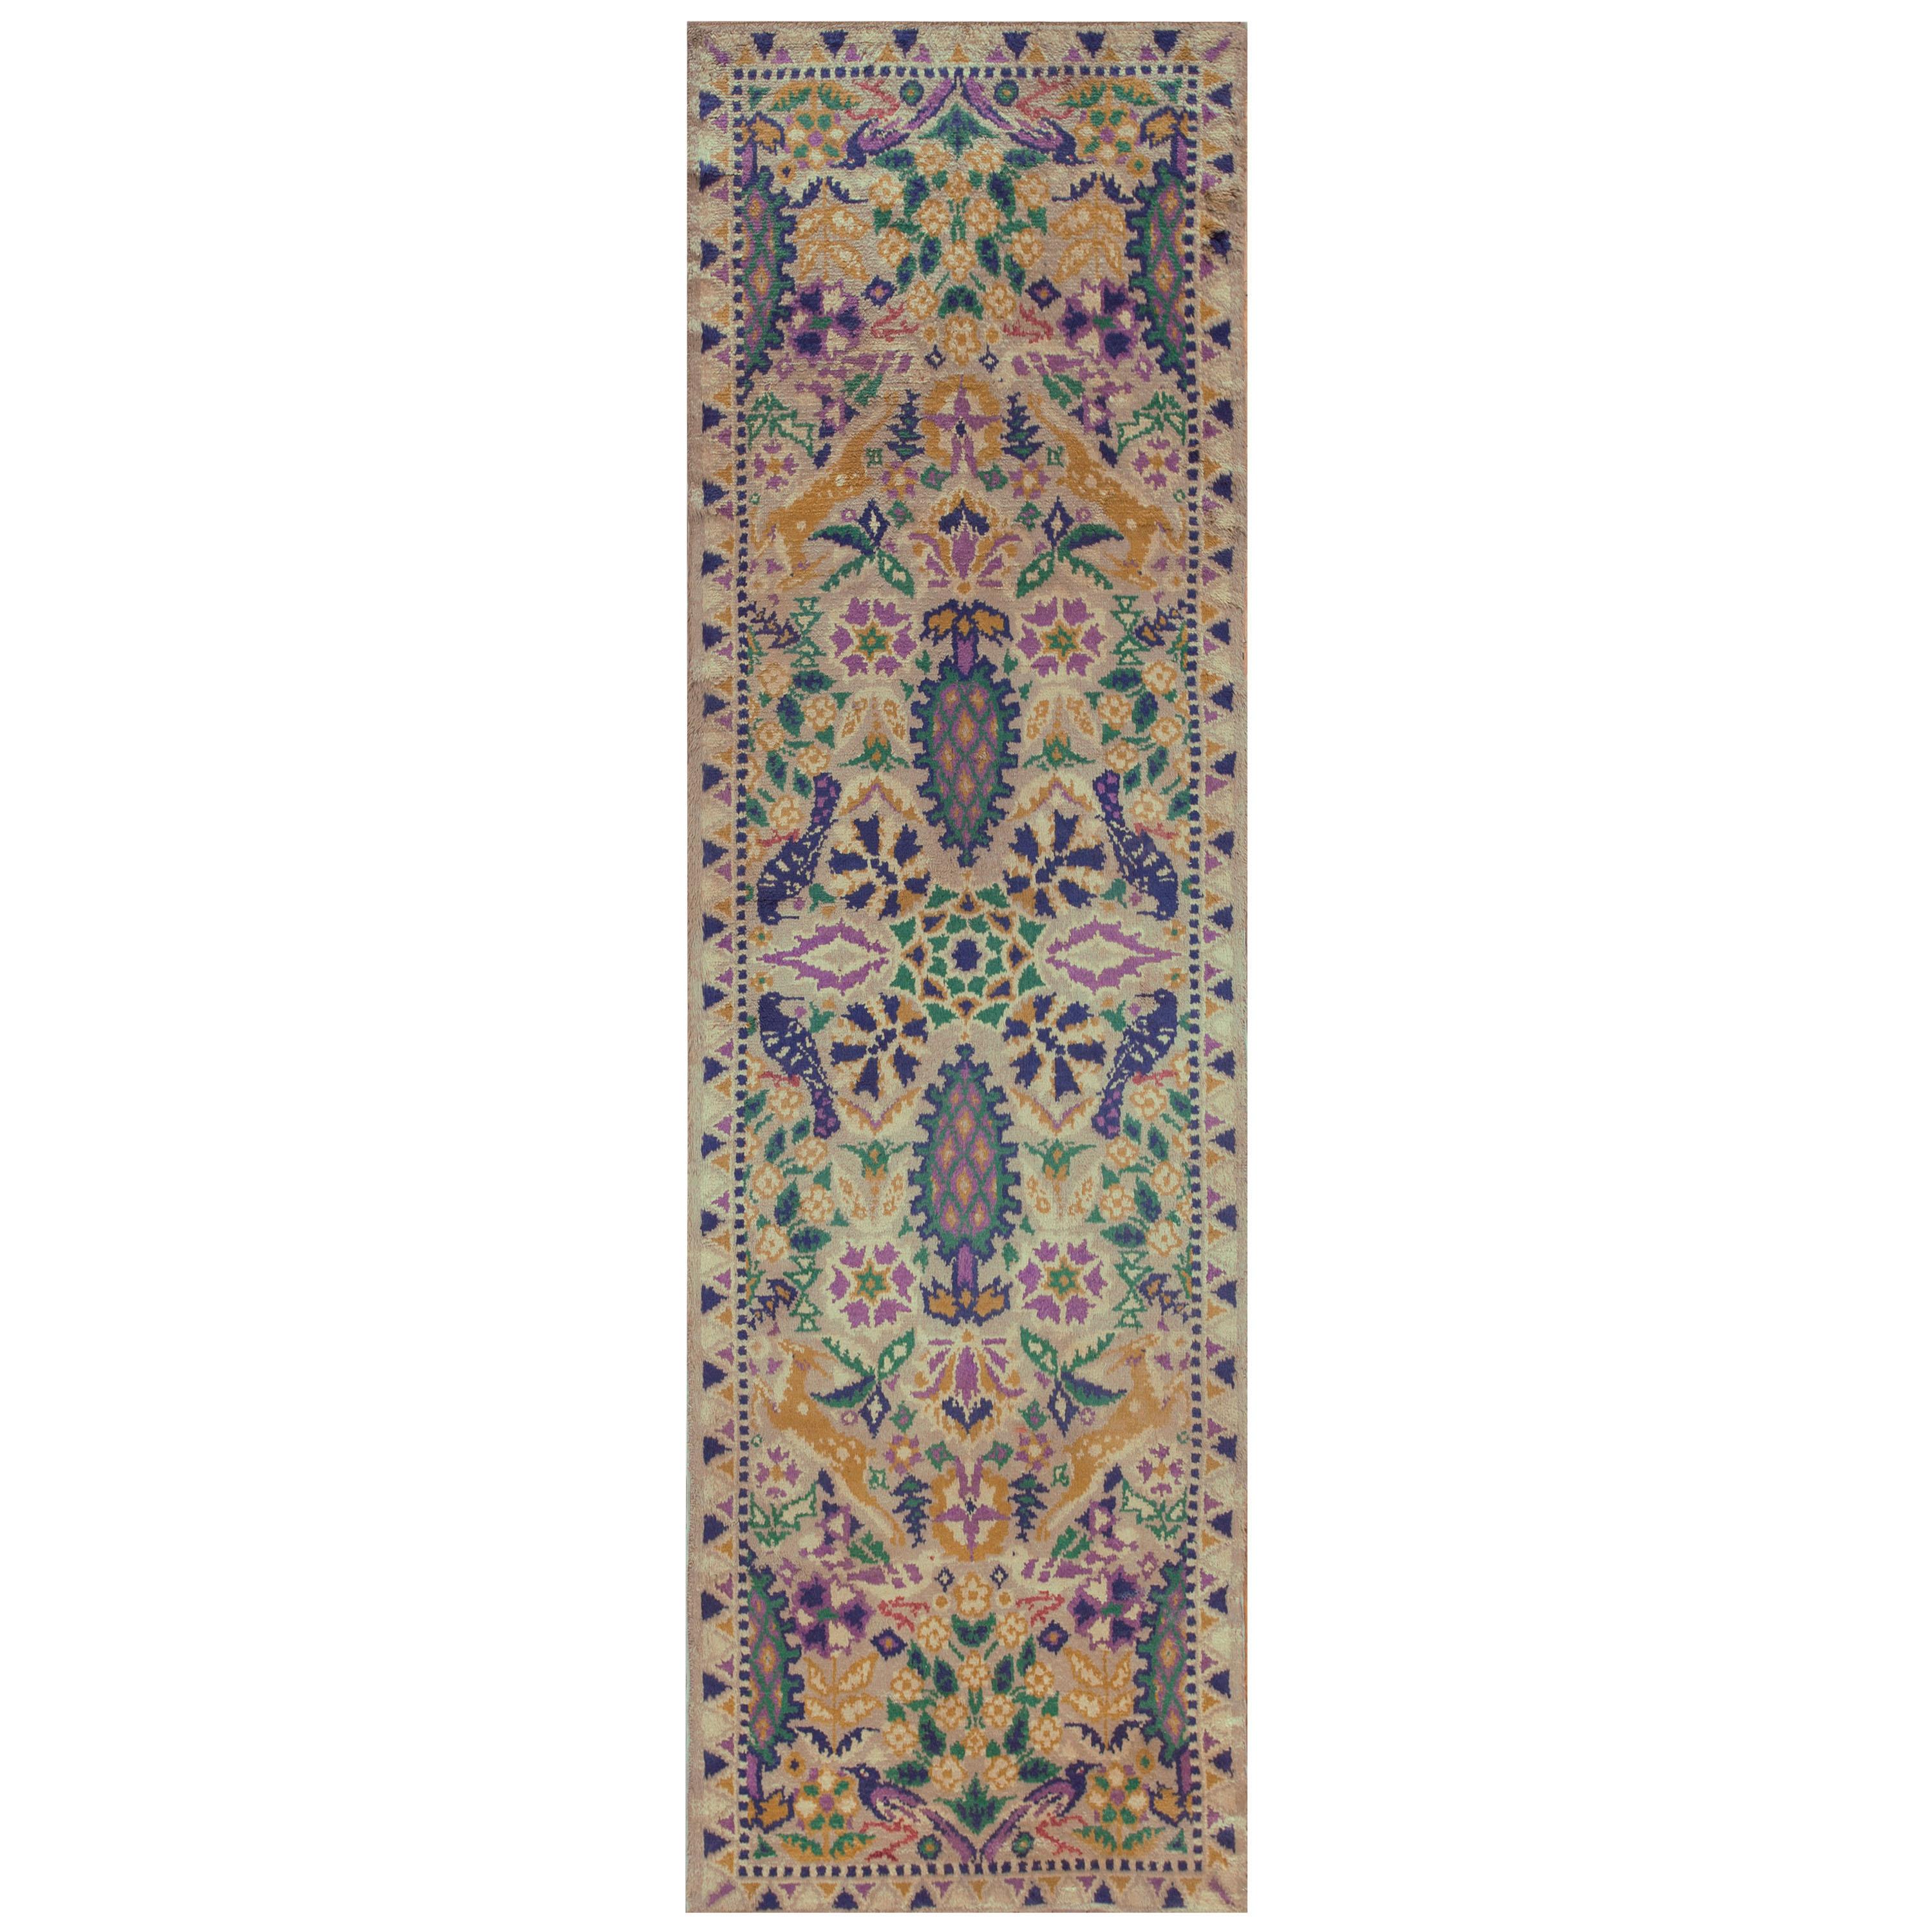 Irischer Donegal Arts & Crafts-Teppich des frühen 20. Jahrhunderts (3'6 Zoll x 11'2 Zoll) -107 x 341 )